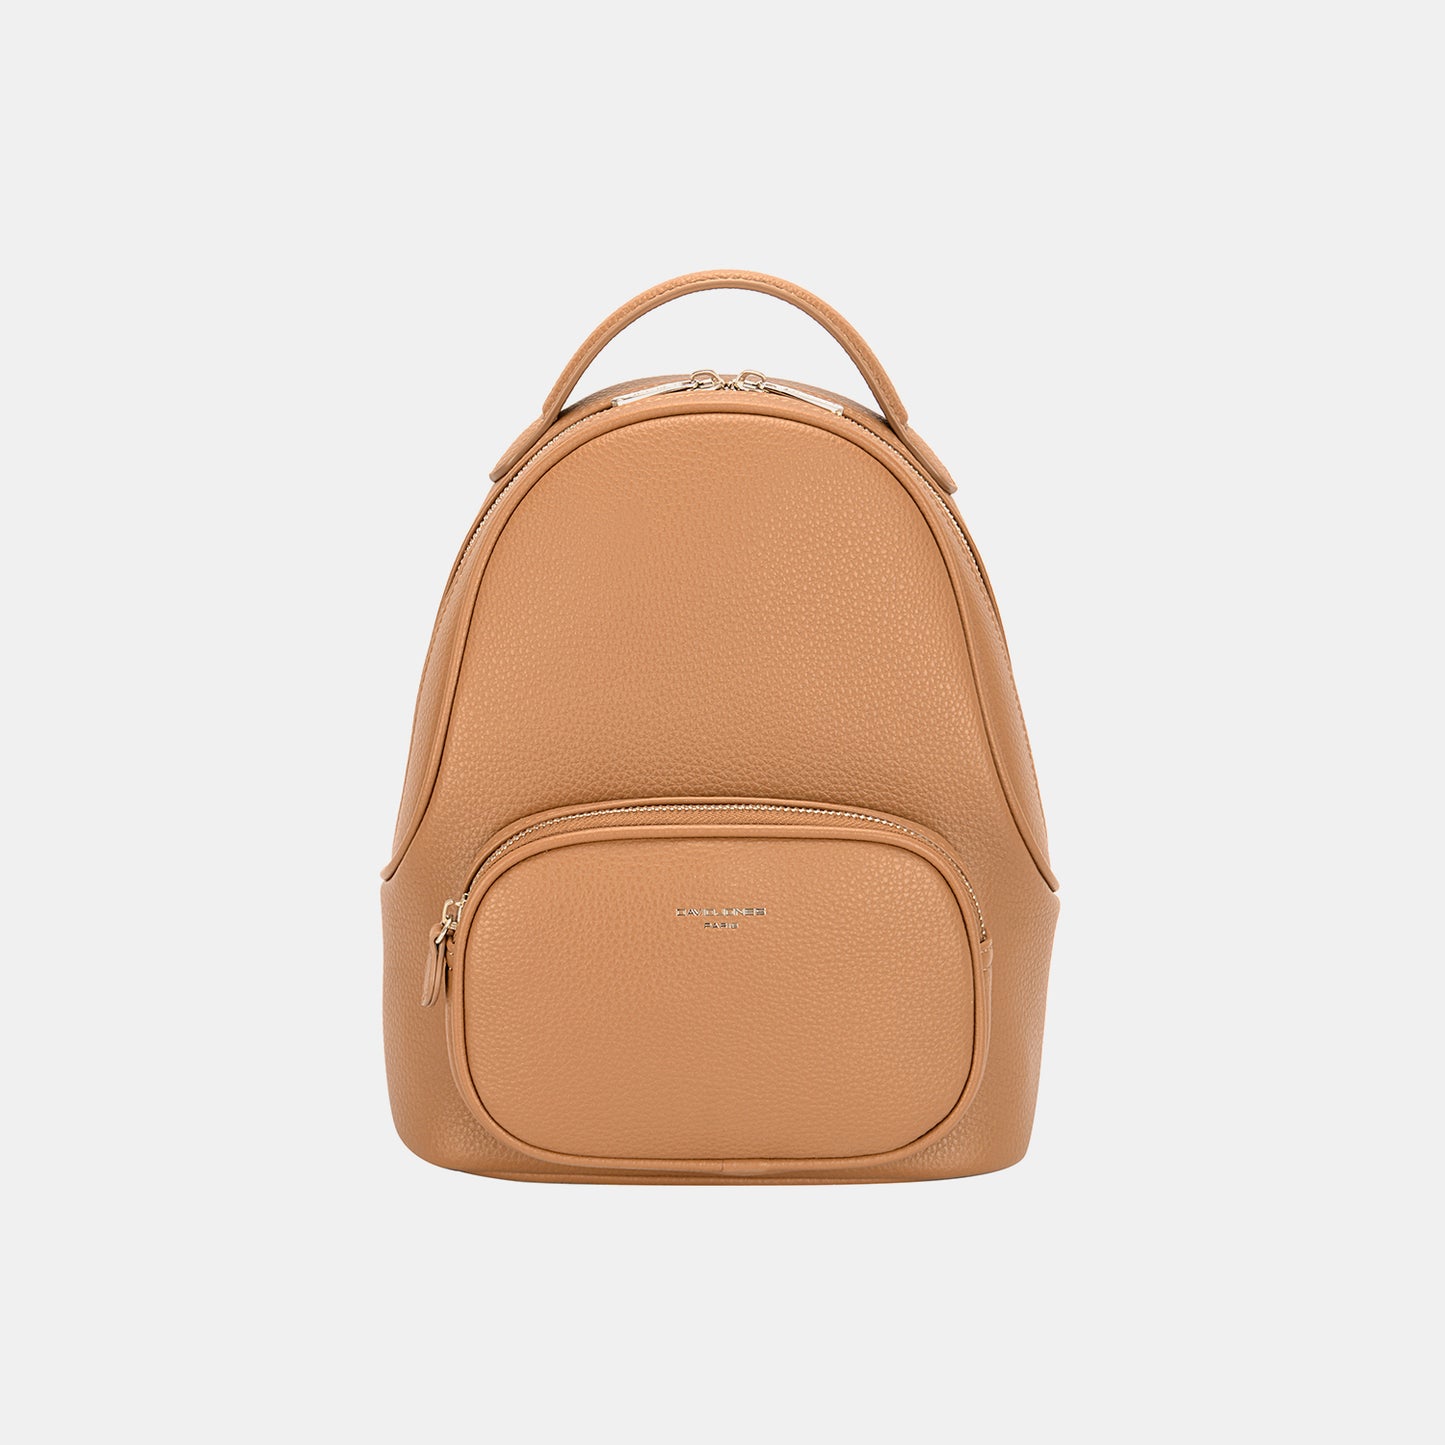 TEEK - Arched Handle Backpack BAG TEEK Trend Camel  